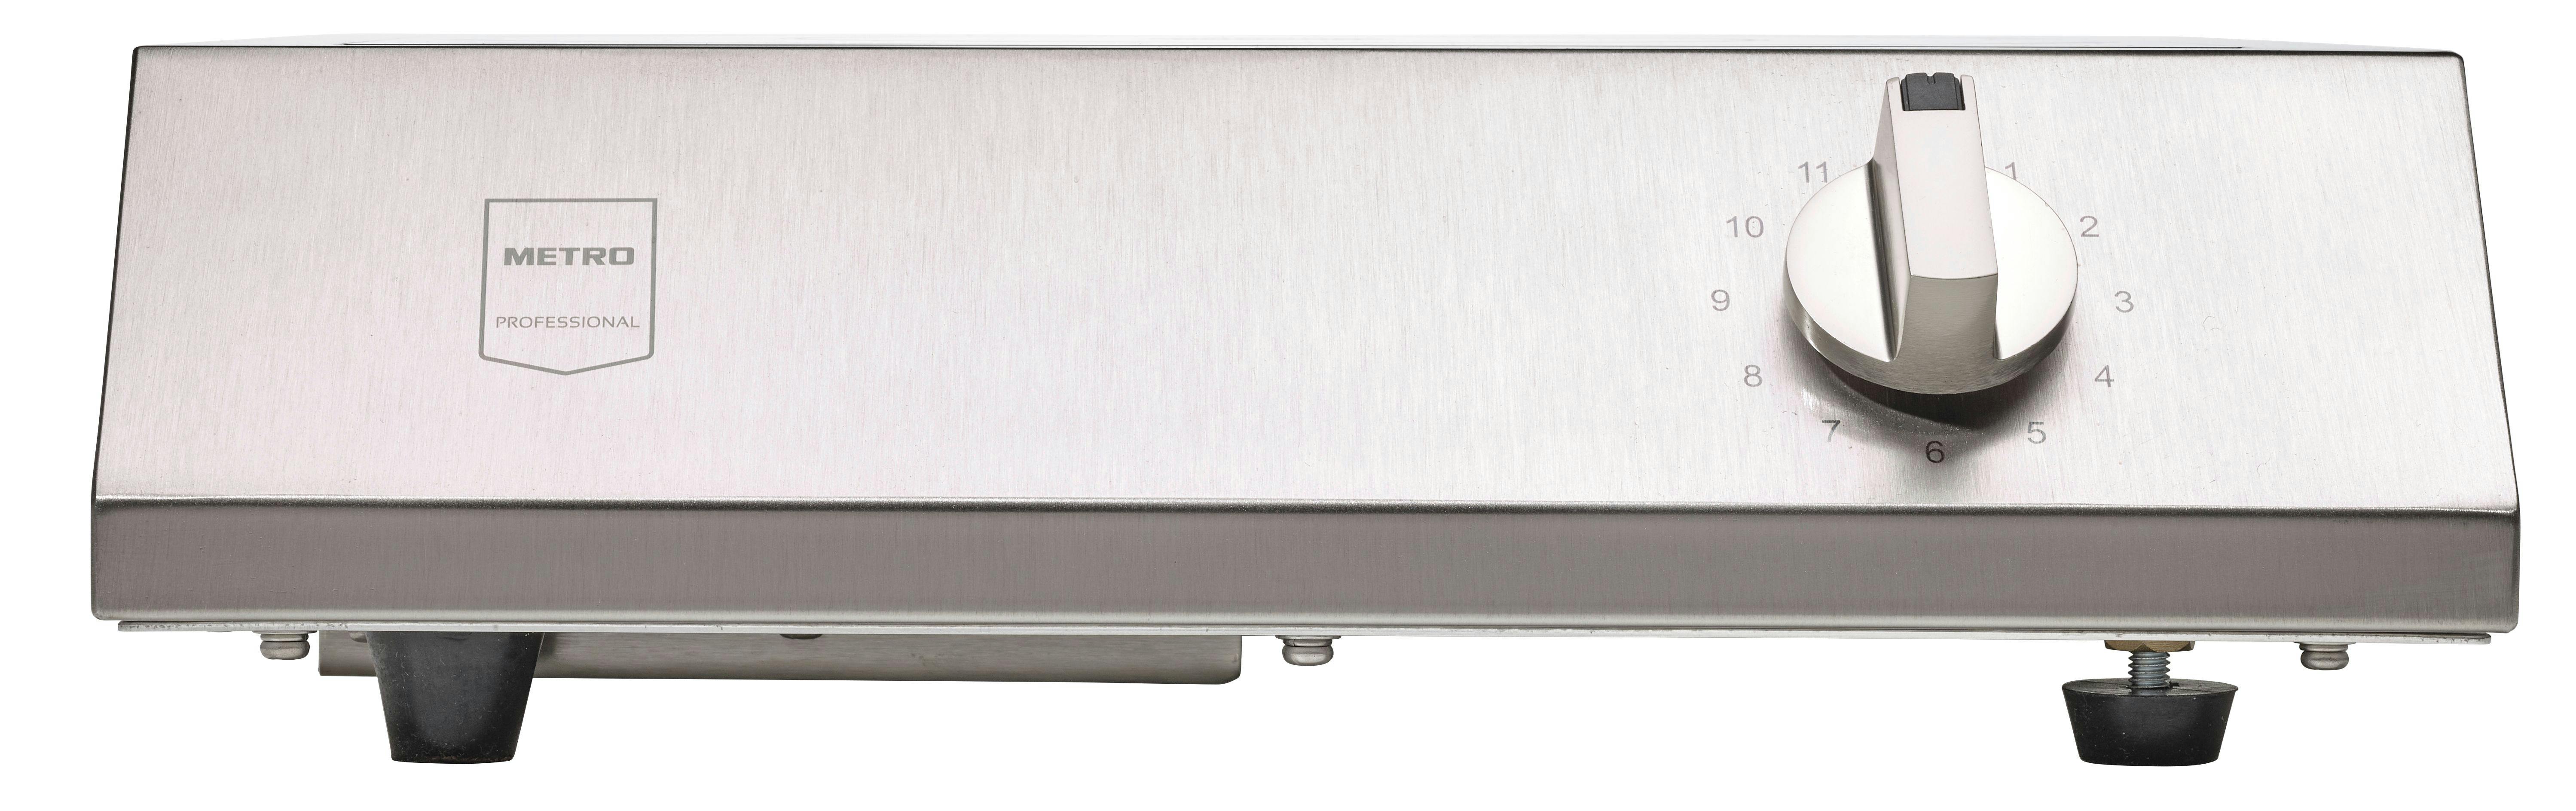 METRO Professional Placa de inducción GIC3500, acero inoxidable /  vitrocerámica, 32.9 x 41.3 x 9.9 cm, 3500 W, 11 niveles de potencia, plata